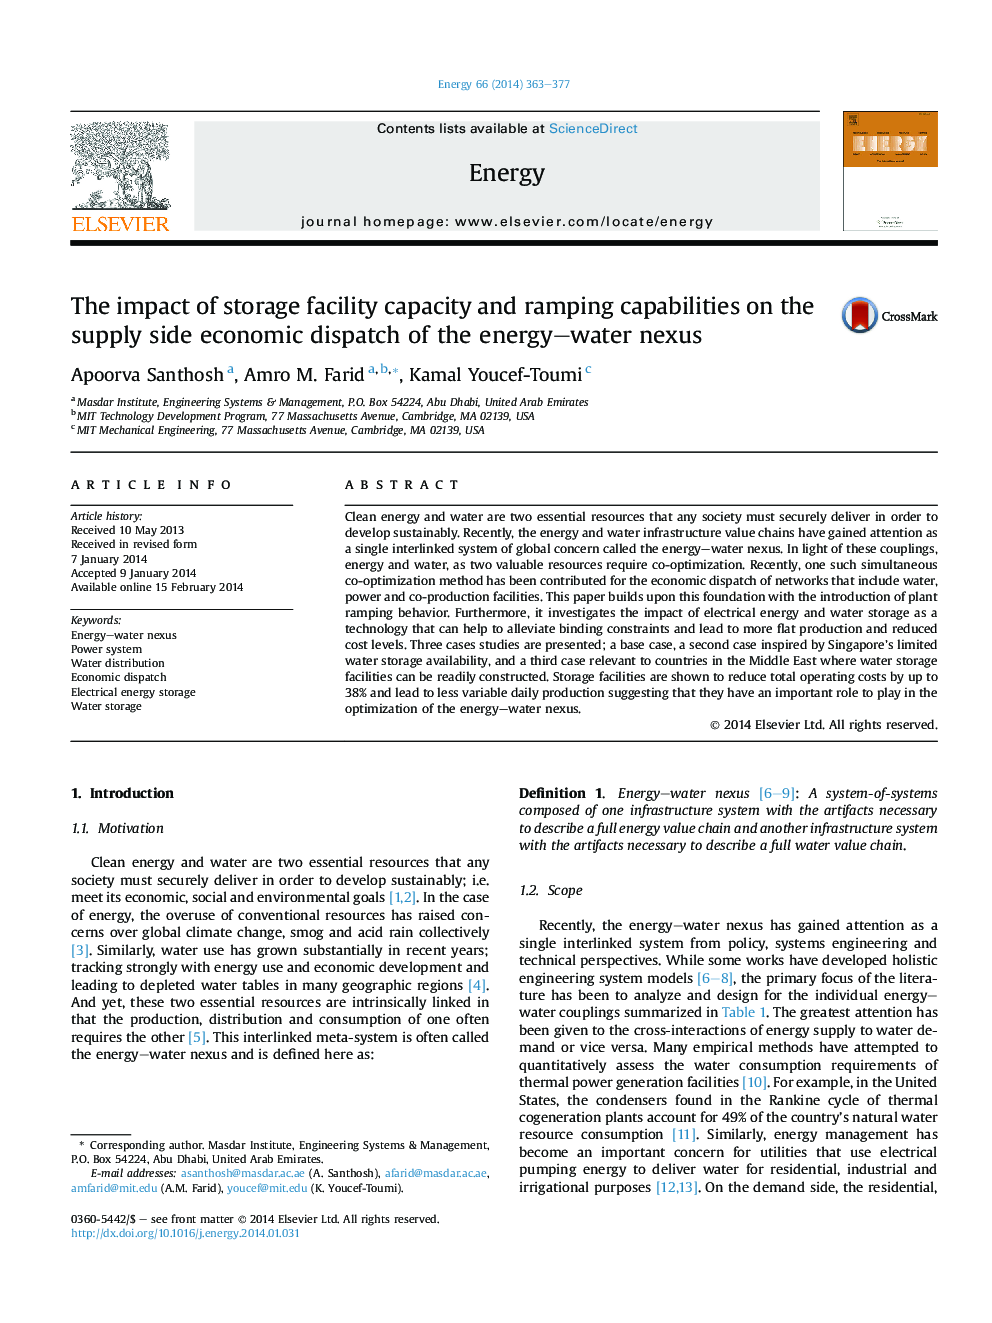 تأثیر ظرفیت ذخیره سازی و توانایی های رمپینگ در جهت عرضه اقتصادی ارتباطات انرژی و آب 